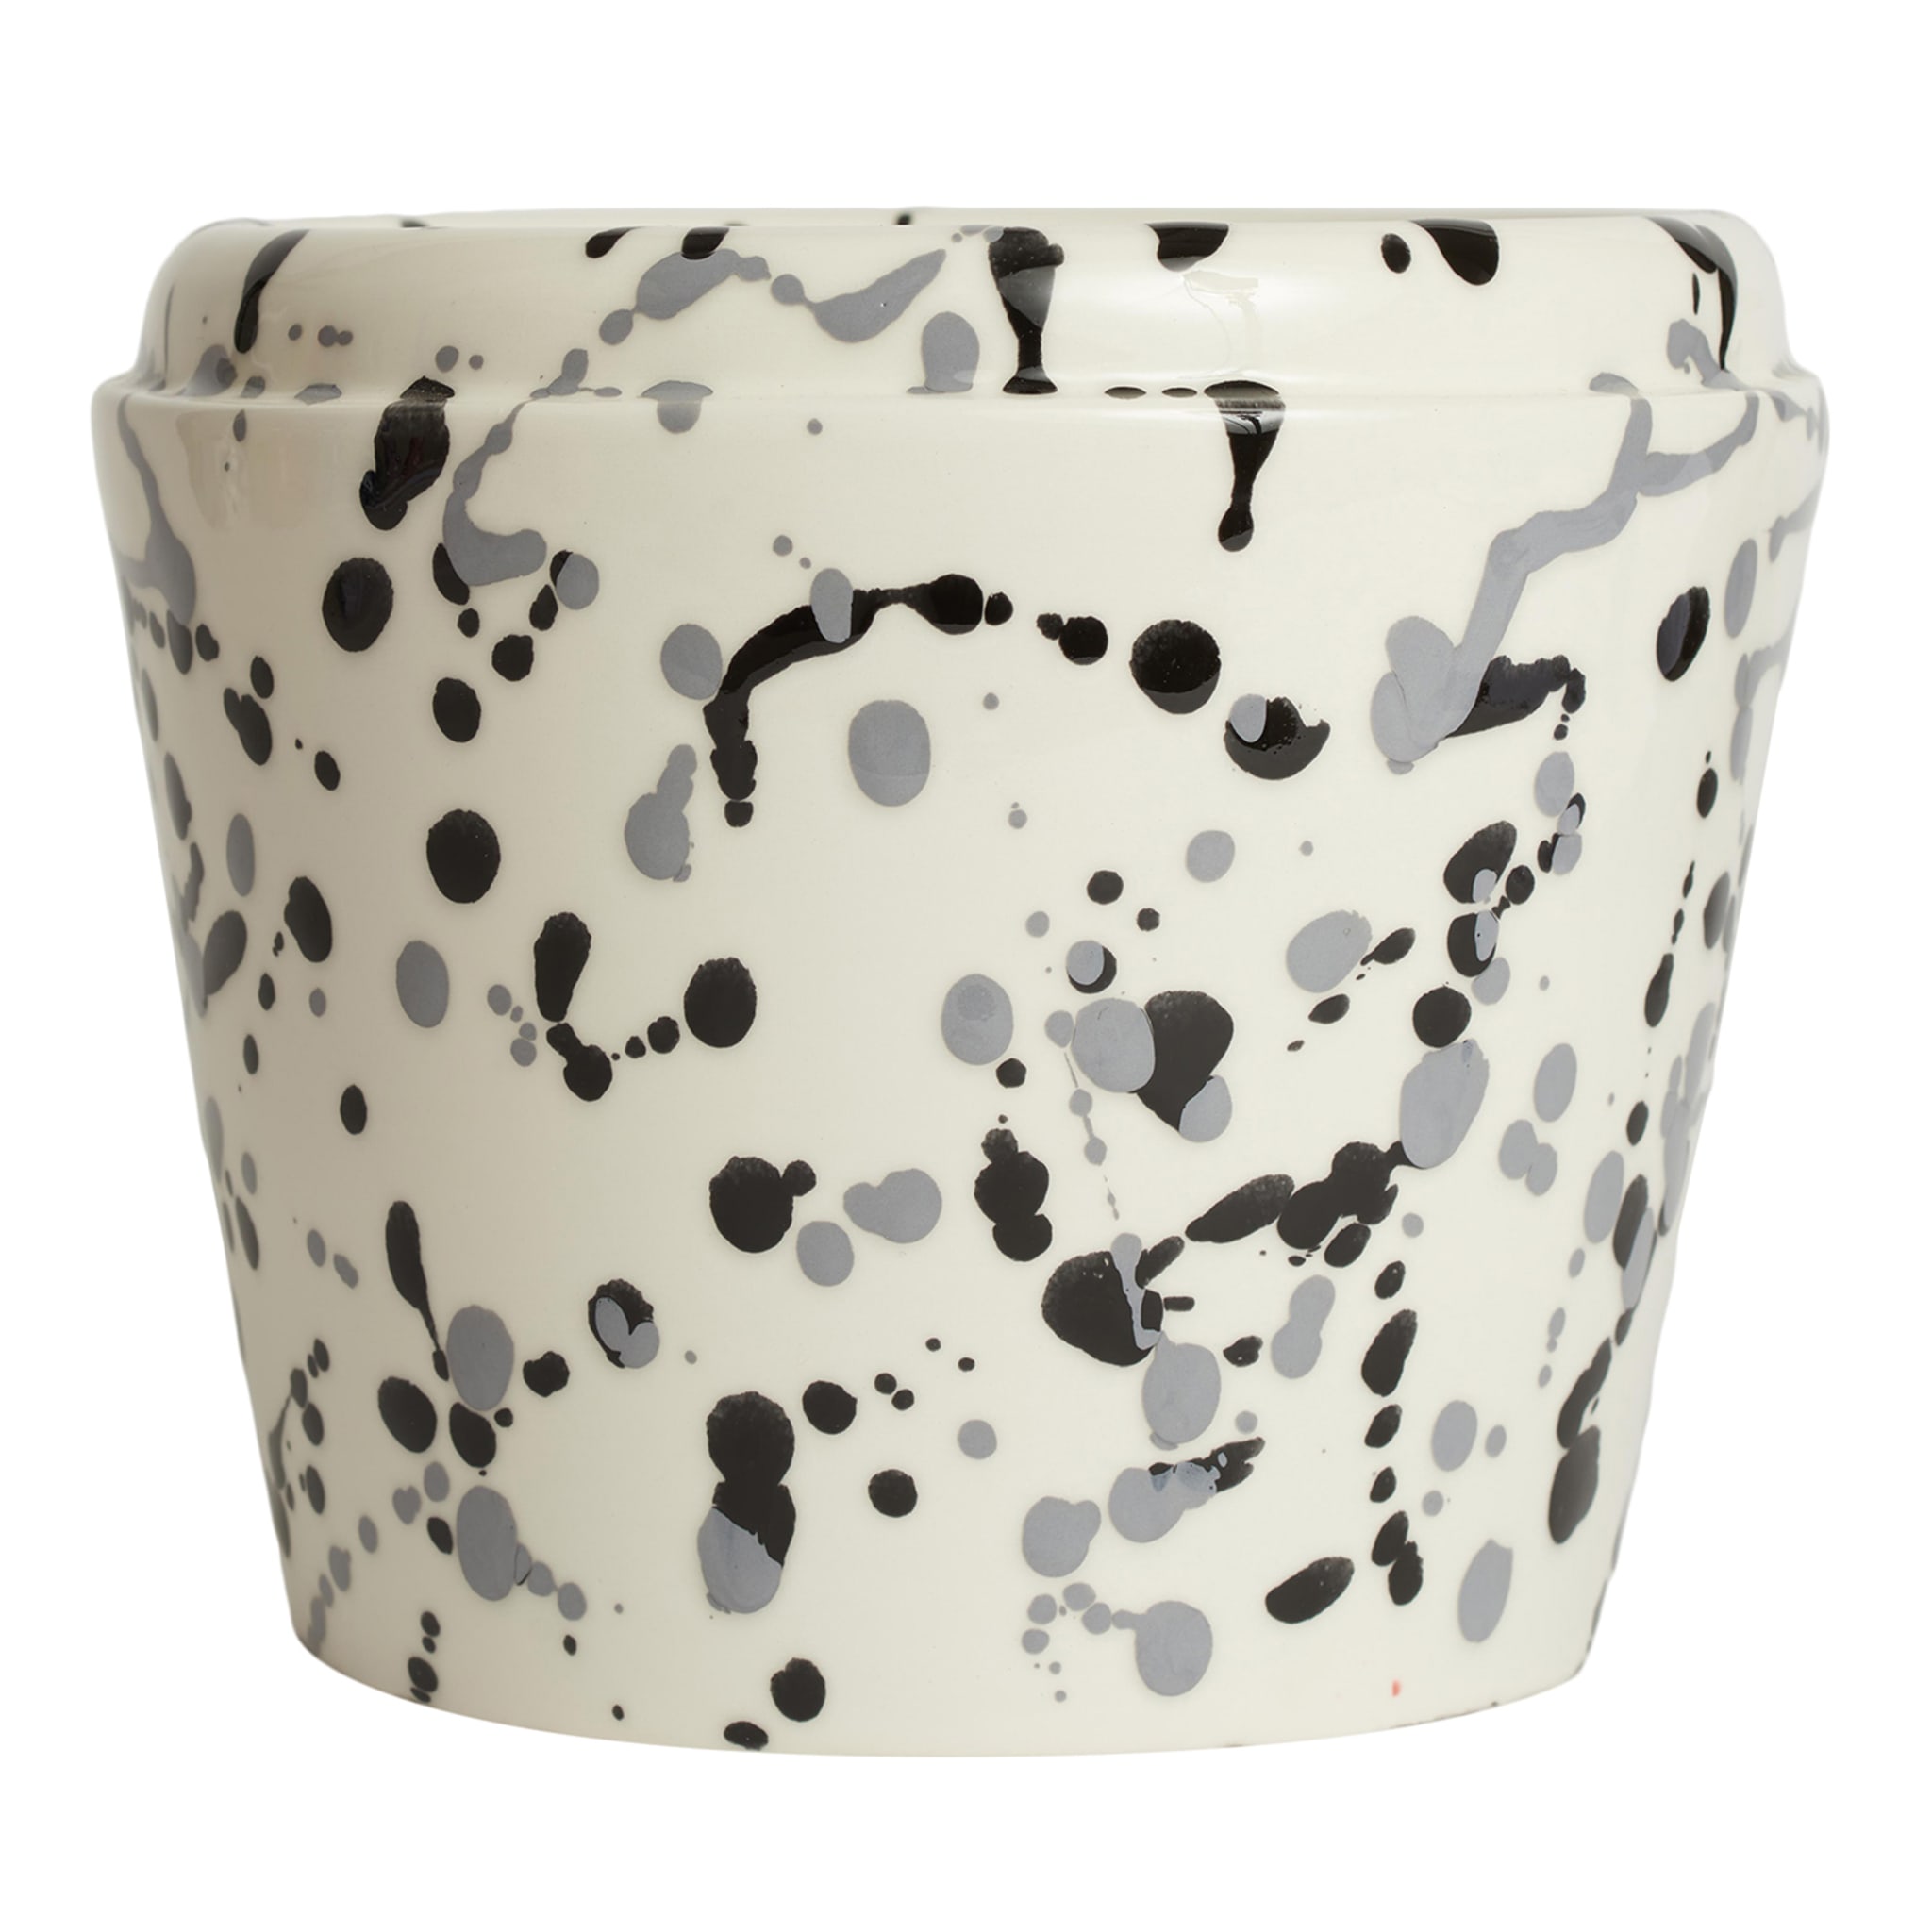 Weiße und schwarze Keramik-Übertopf-Vase - Hauptansicht